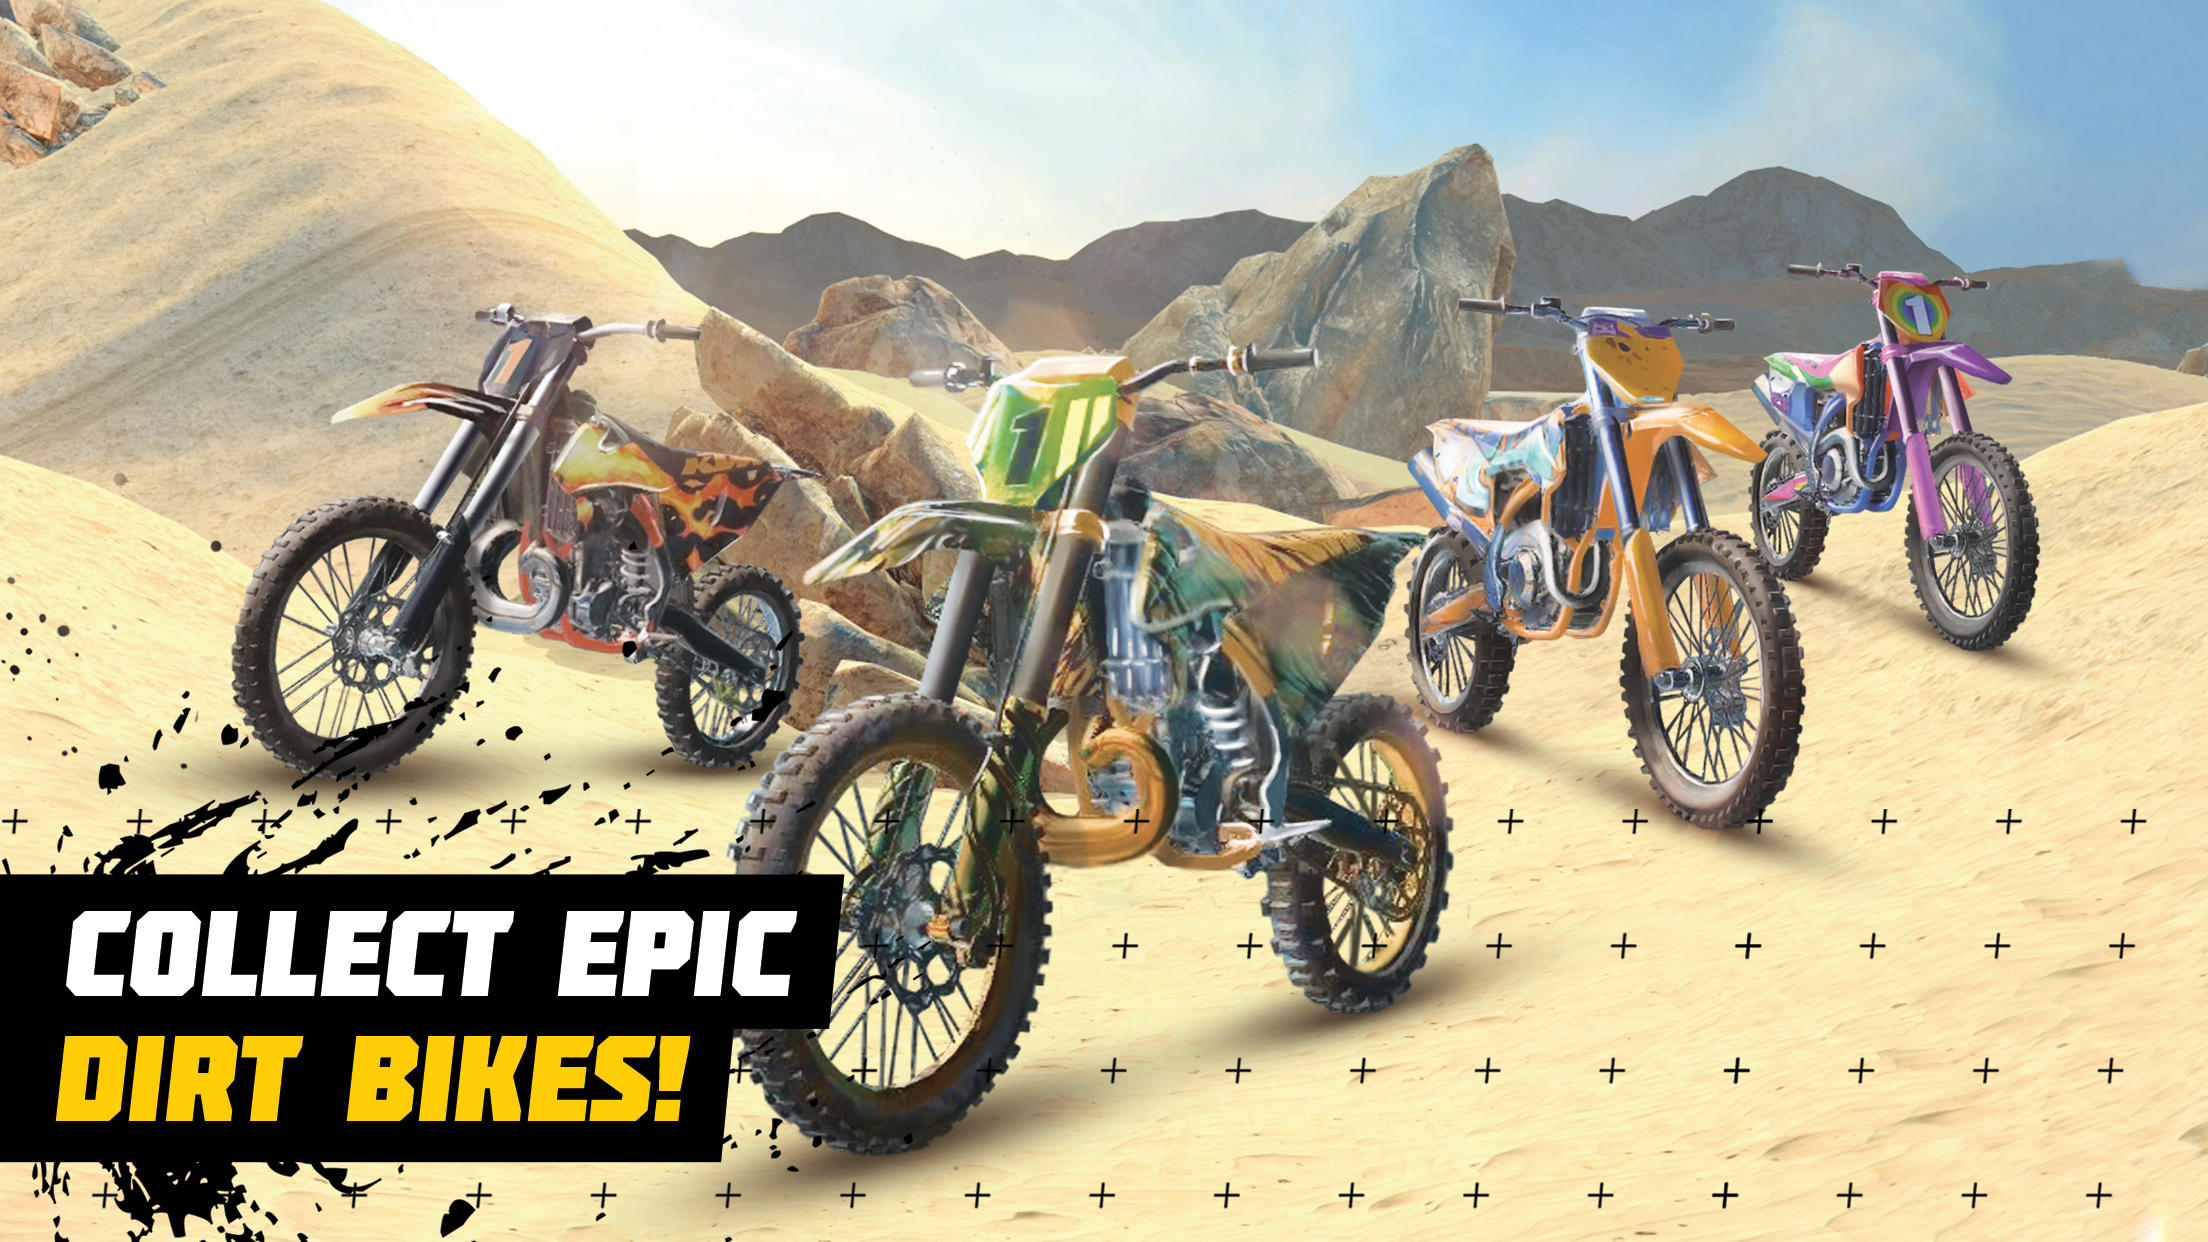 MX Bikes - Dirt Bike Games APK para Android - Download